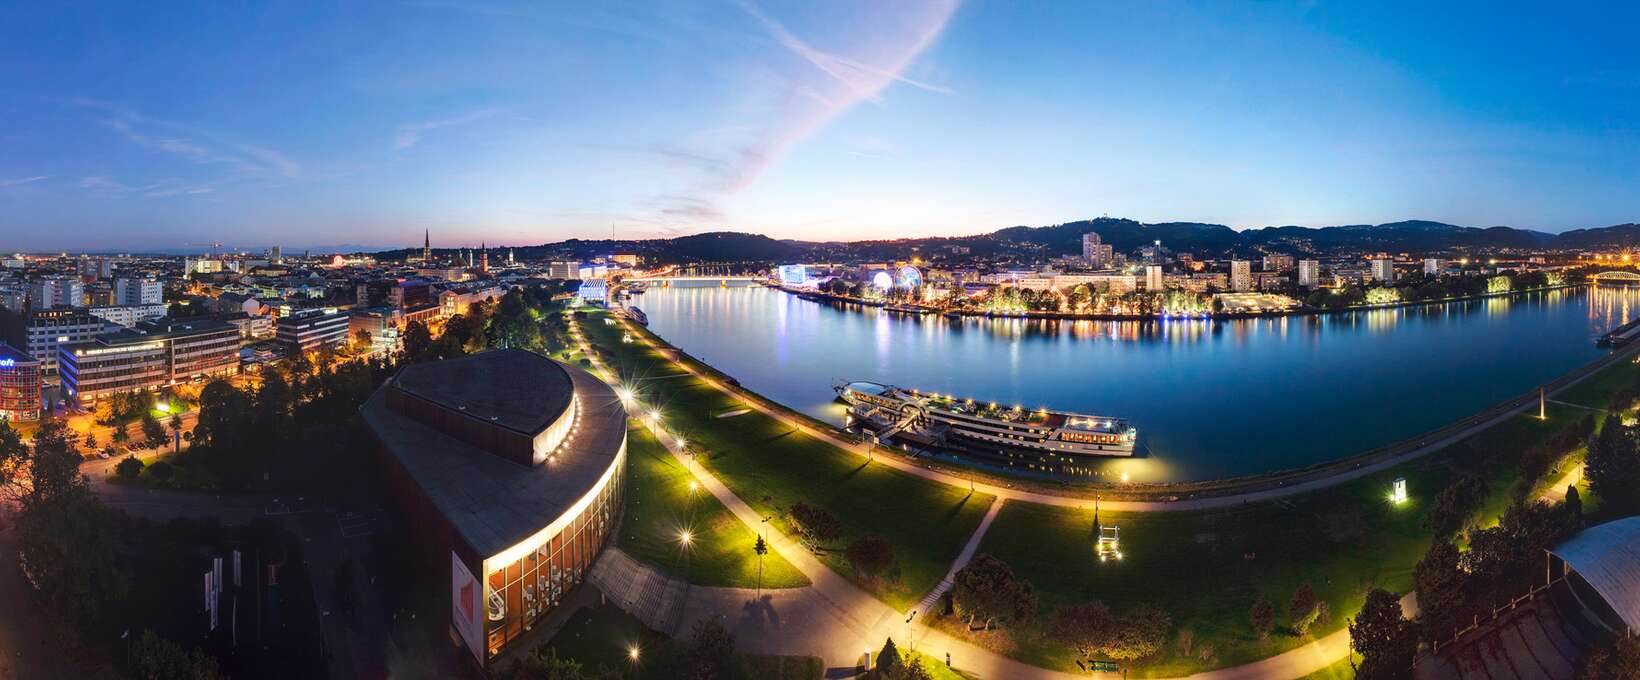 Panorama in der Nacht mit Fluss | Linz | © Linz Tourismus | J. Steininger